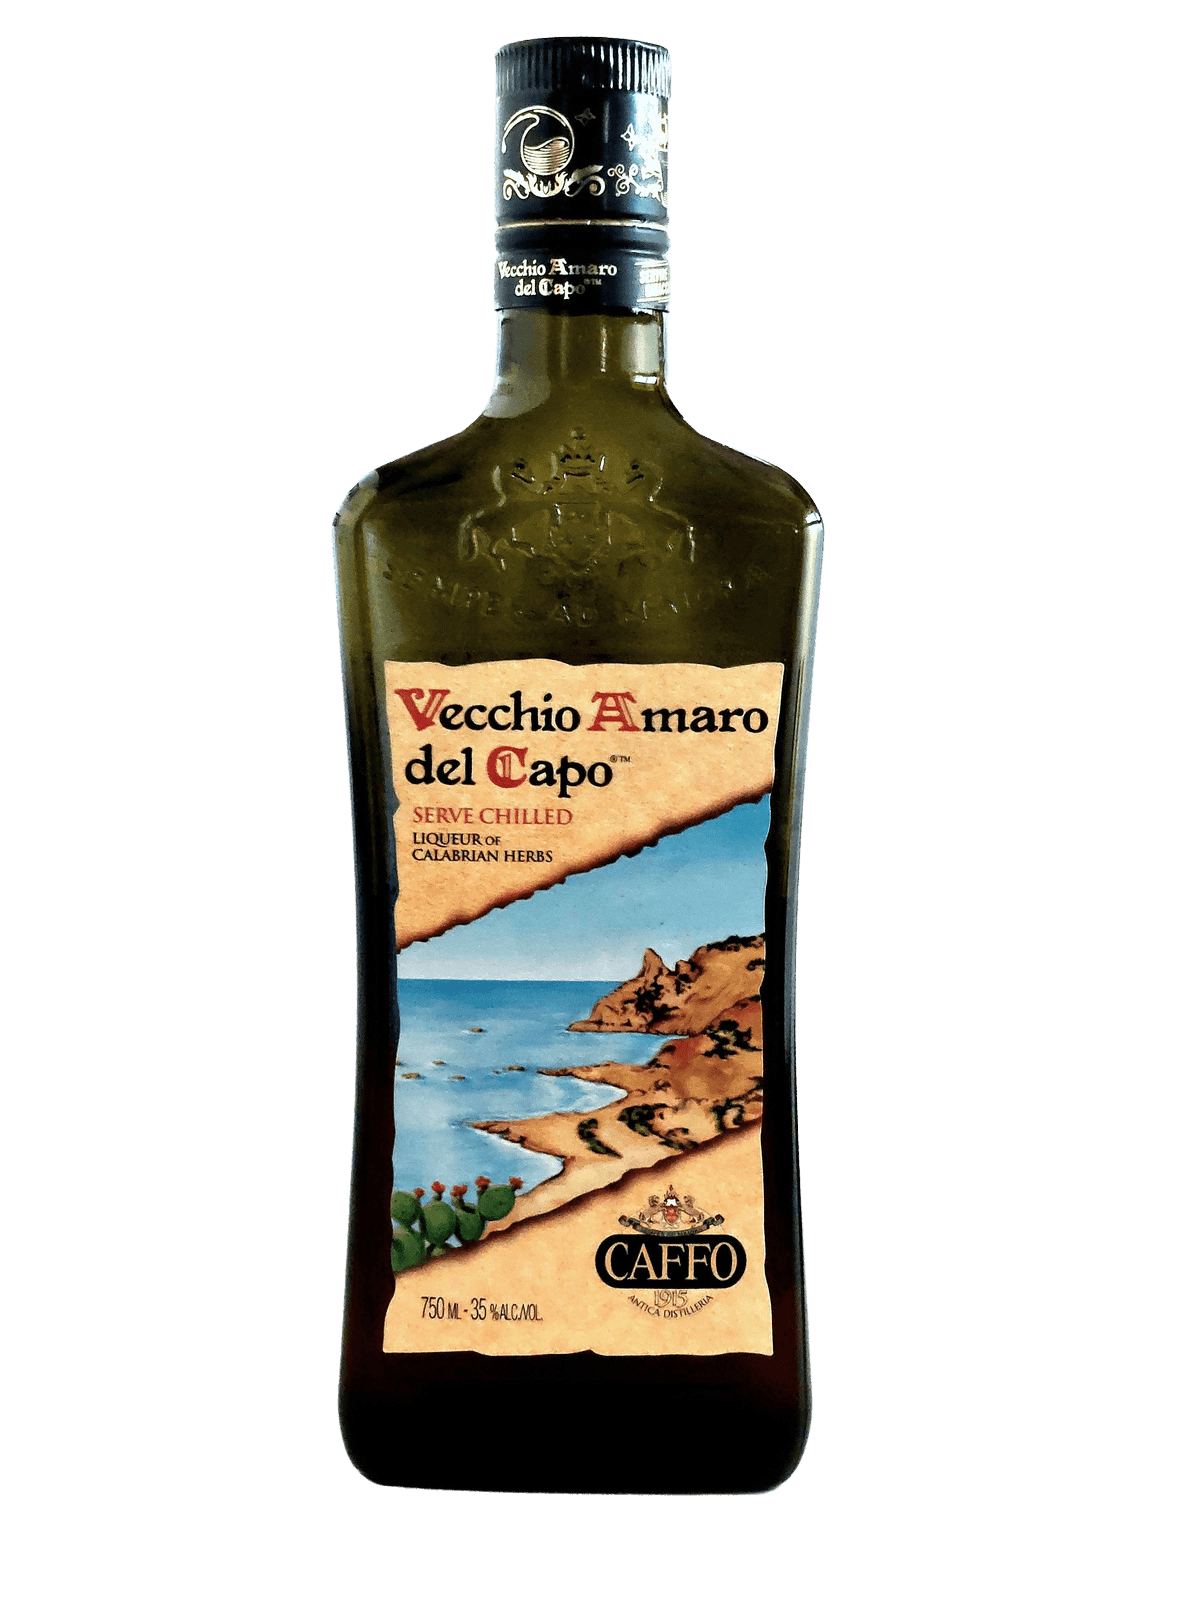 Vecchio Amaro del Capo. (Courtesy of Haus Alpenz)